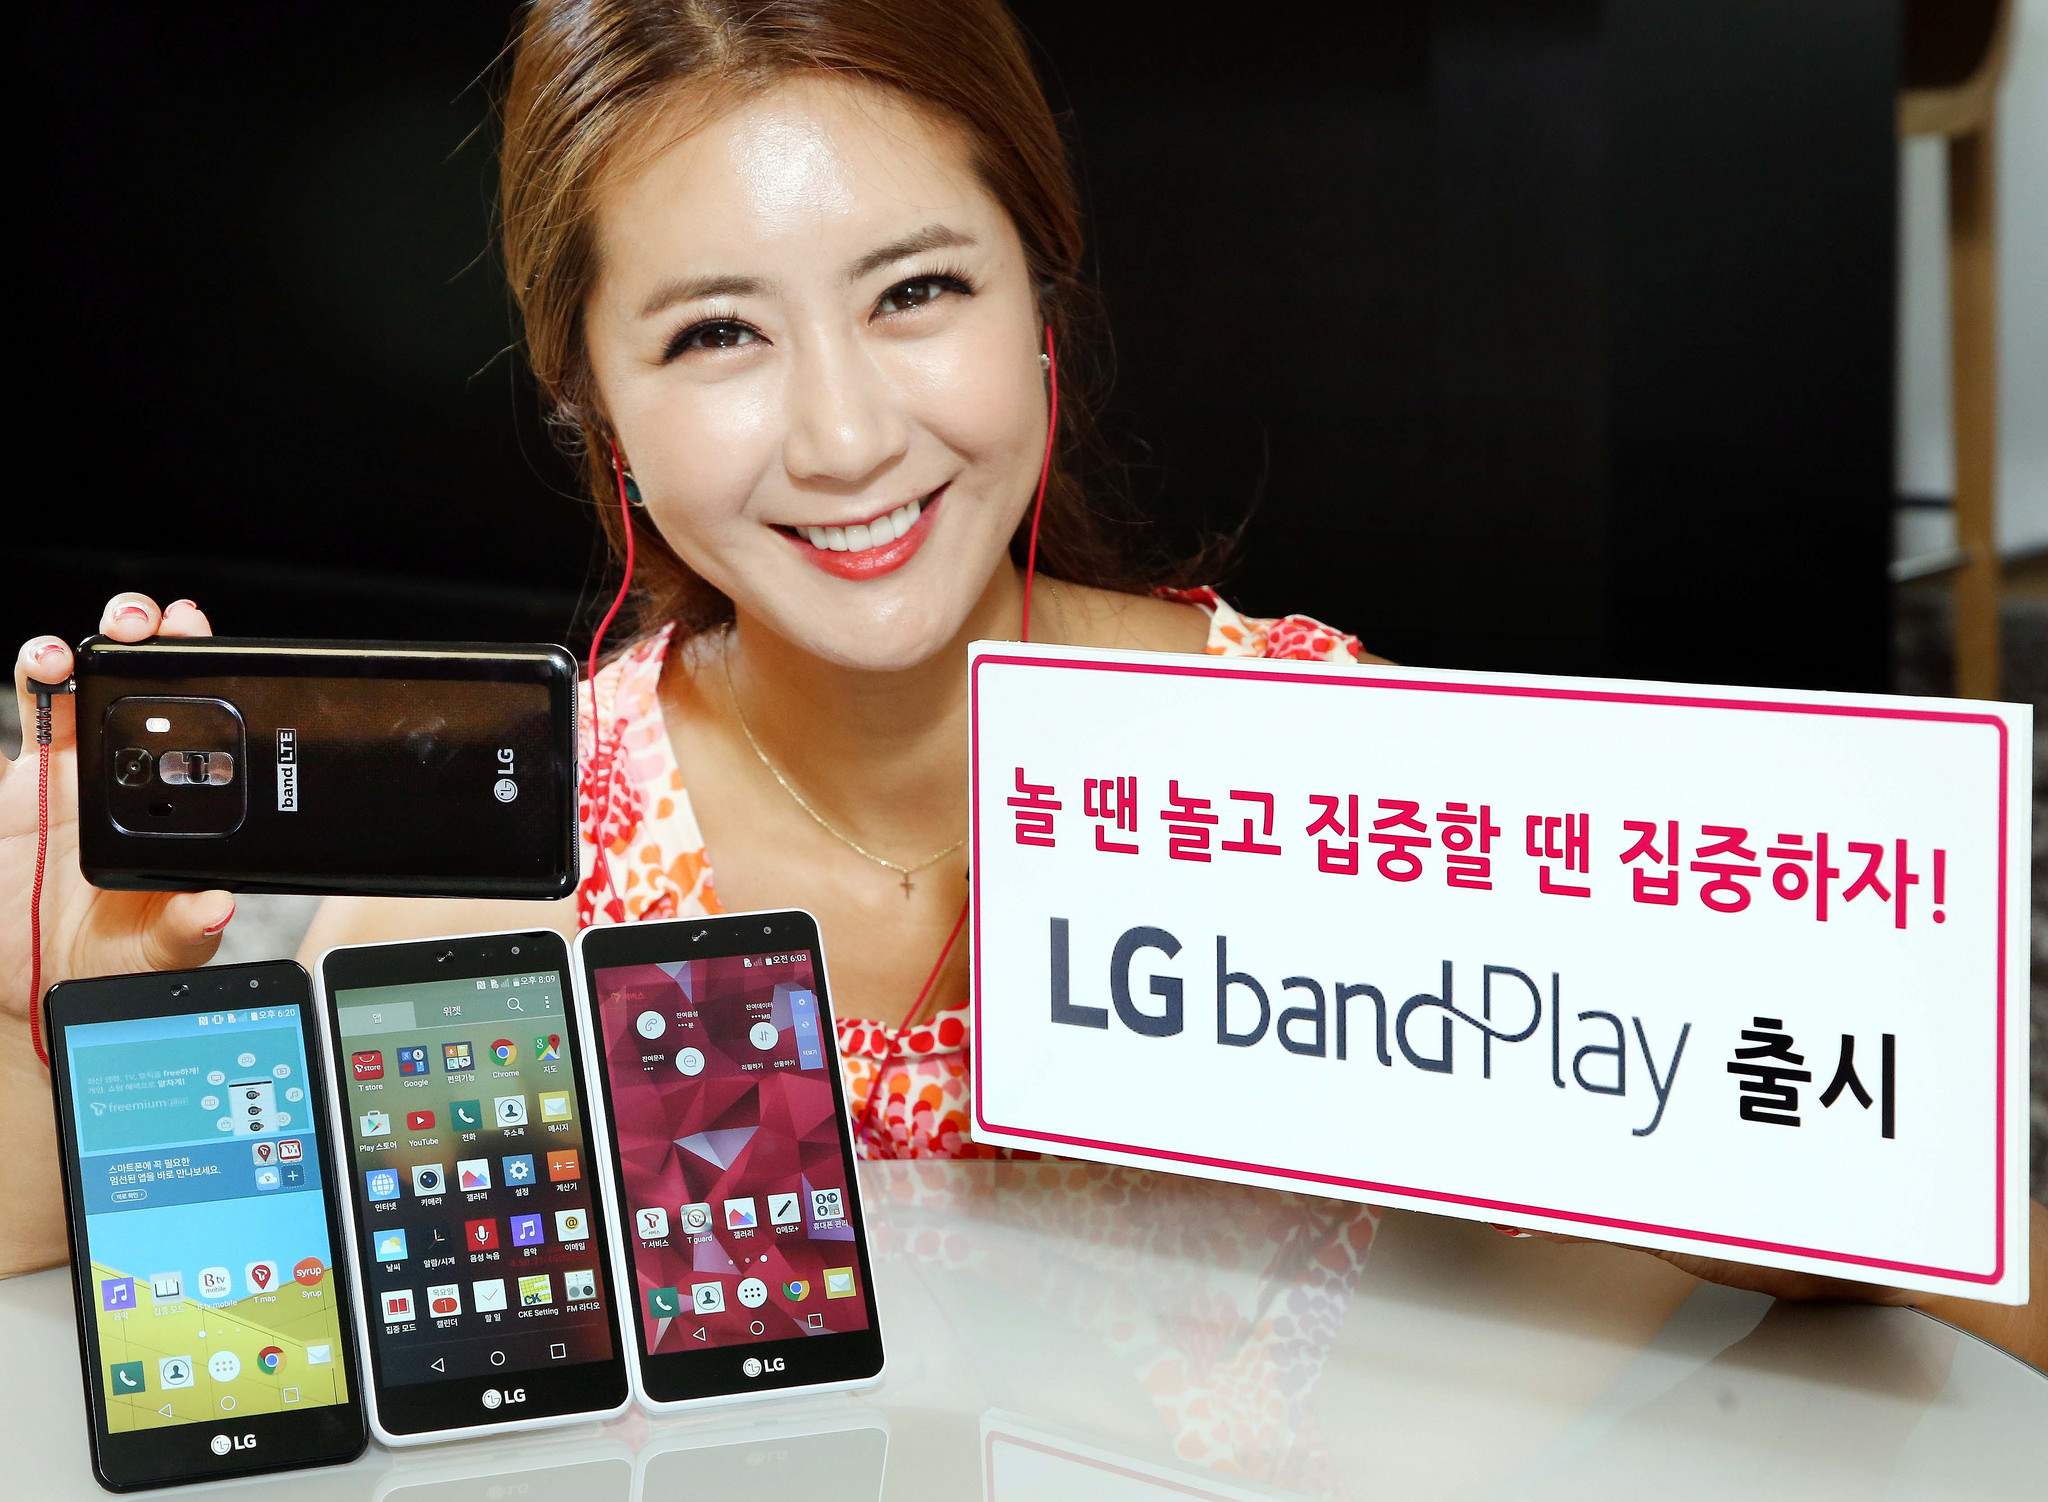 Band Play, Handphone Musik dari LG